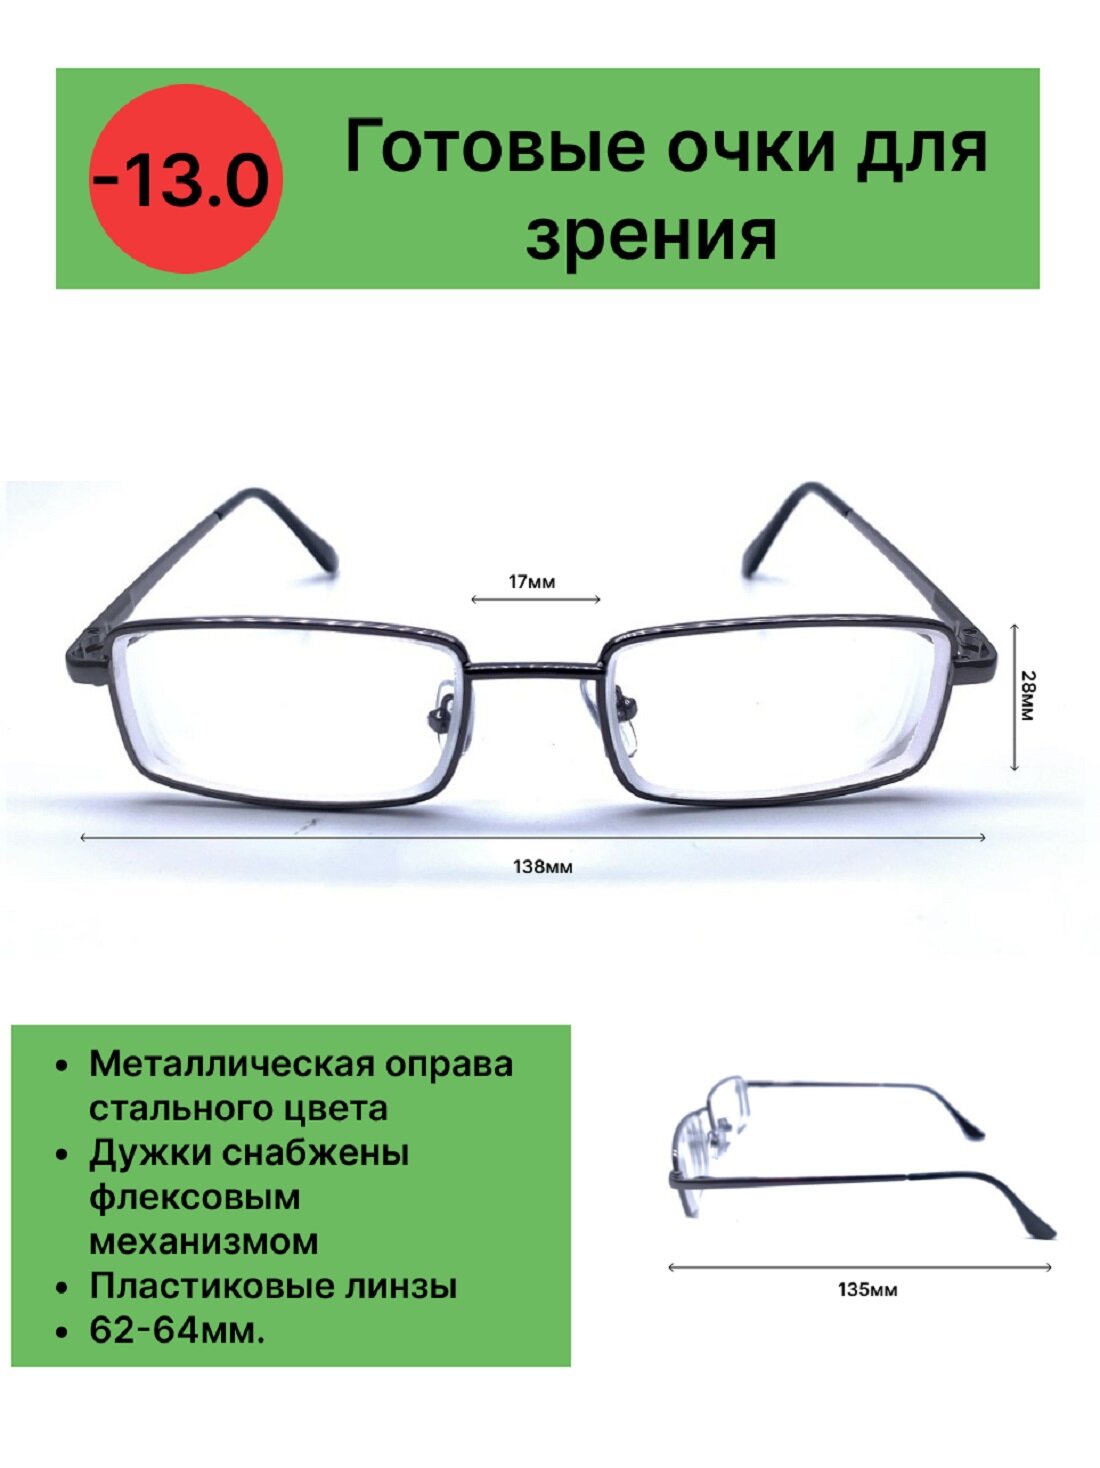 Готовые очки для зрения с диоптриями -13.0